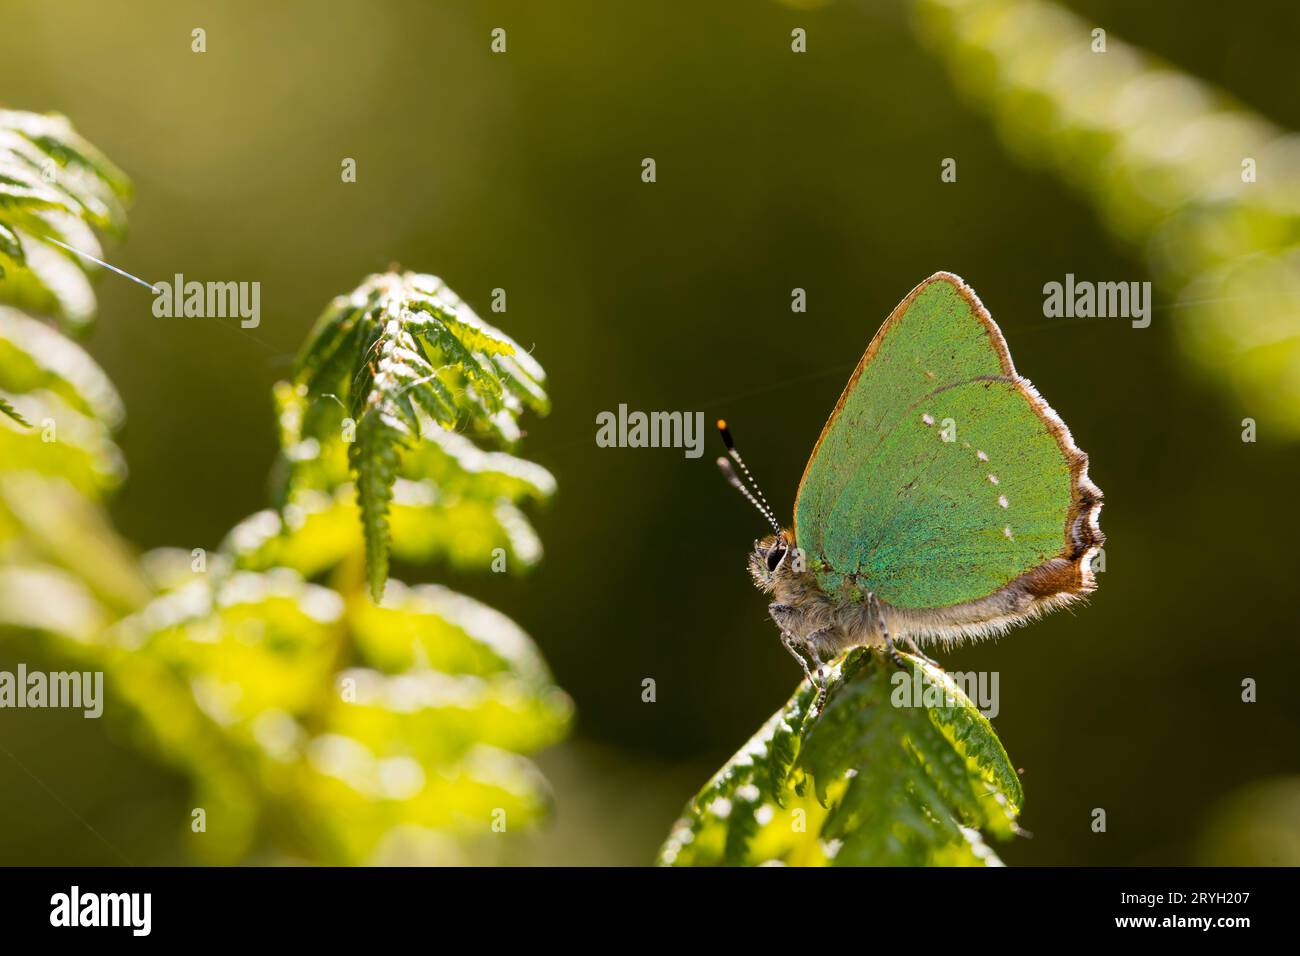 Grüner Schmetterlingsfalter (Callophrys rubi), der auf einer Bracken-Pteridium-Frond thront. Powys, Wales. Juni. Stockfoto